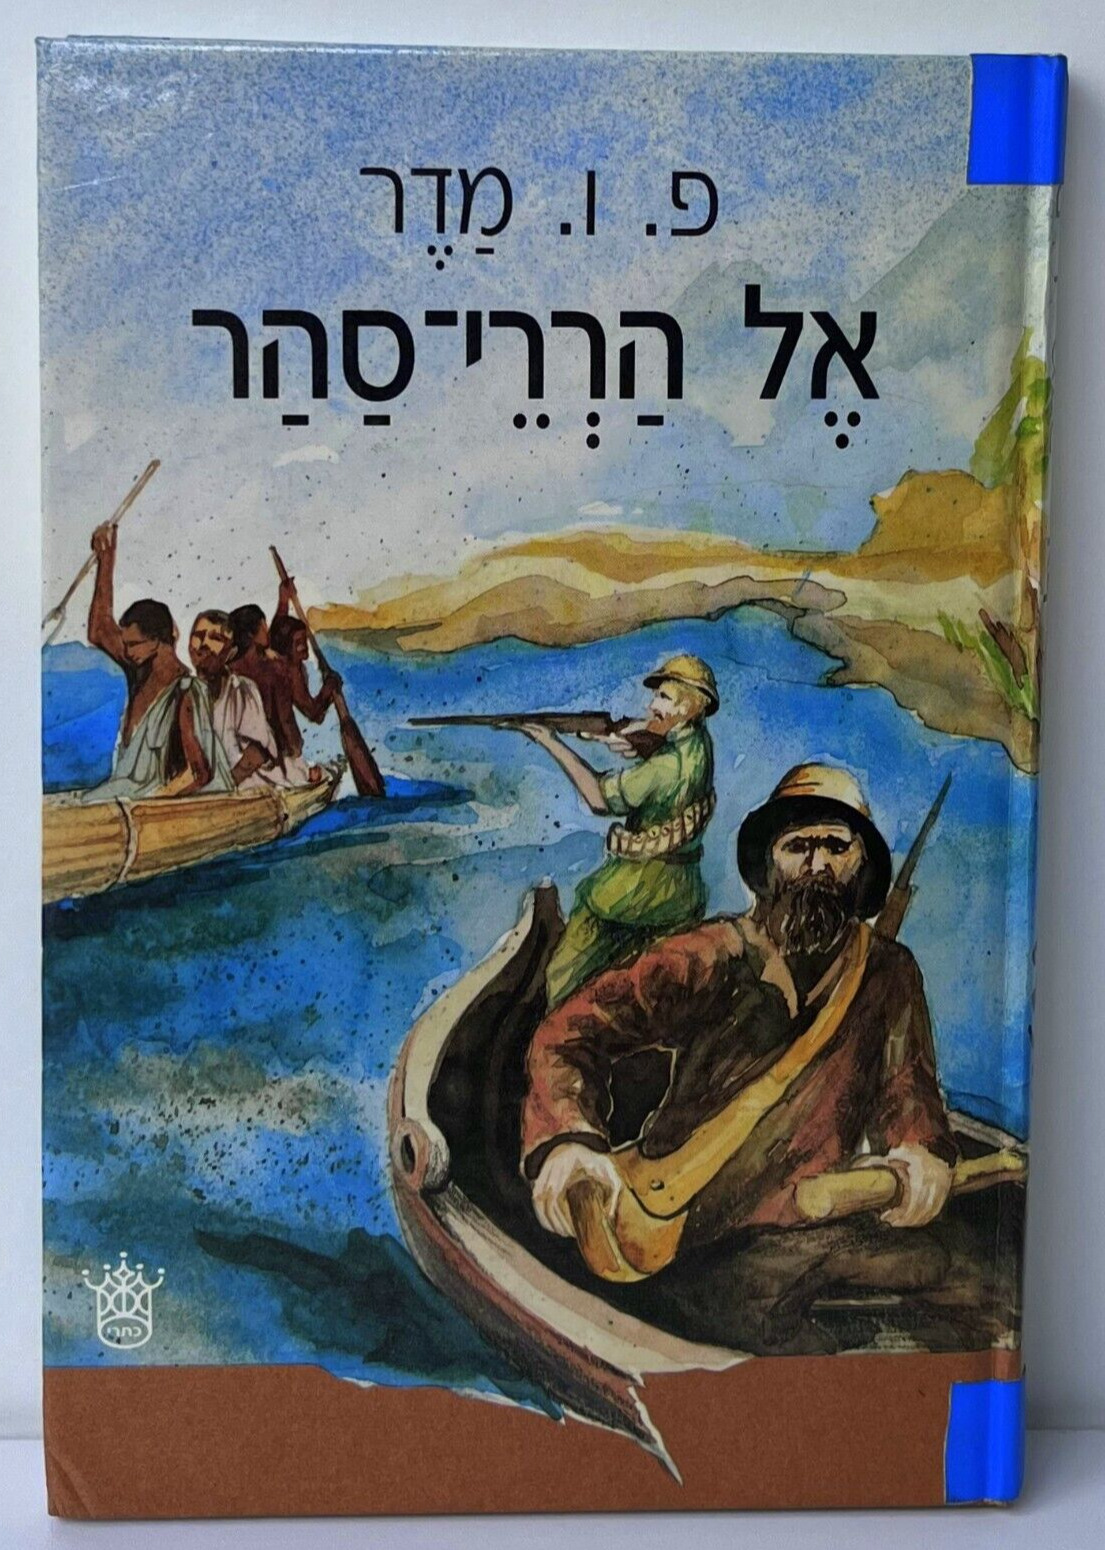 Hebrew book אל הררי סהר פ.ו. מדר עברית: יעקב שרת 1988 מהדורה שניה By Keter Pub